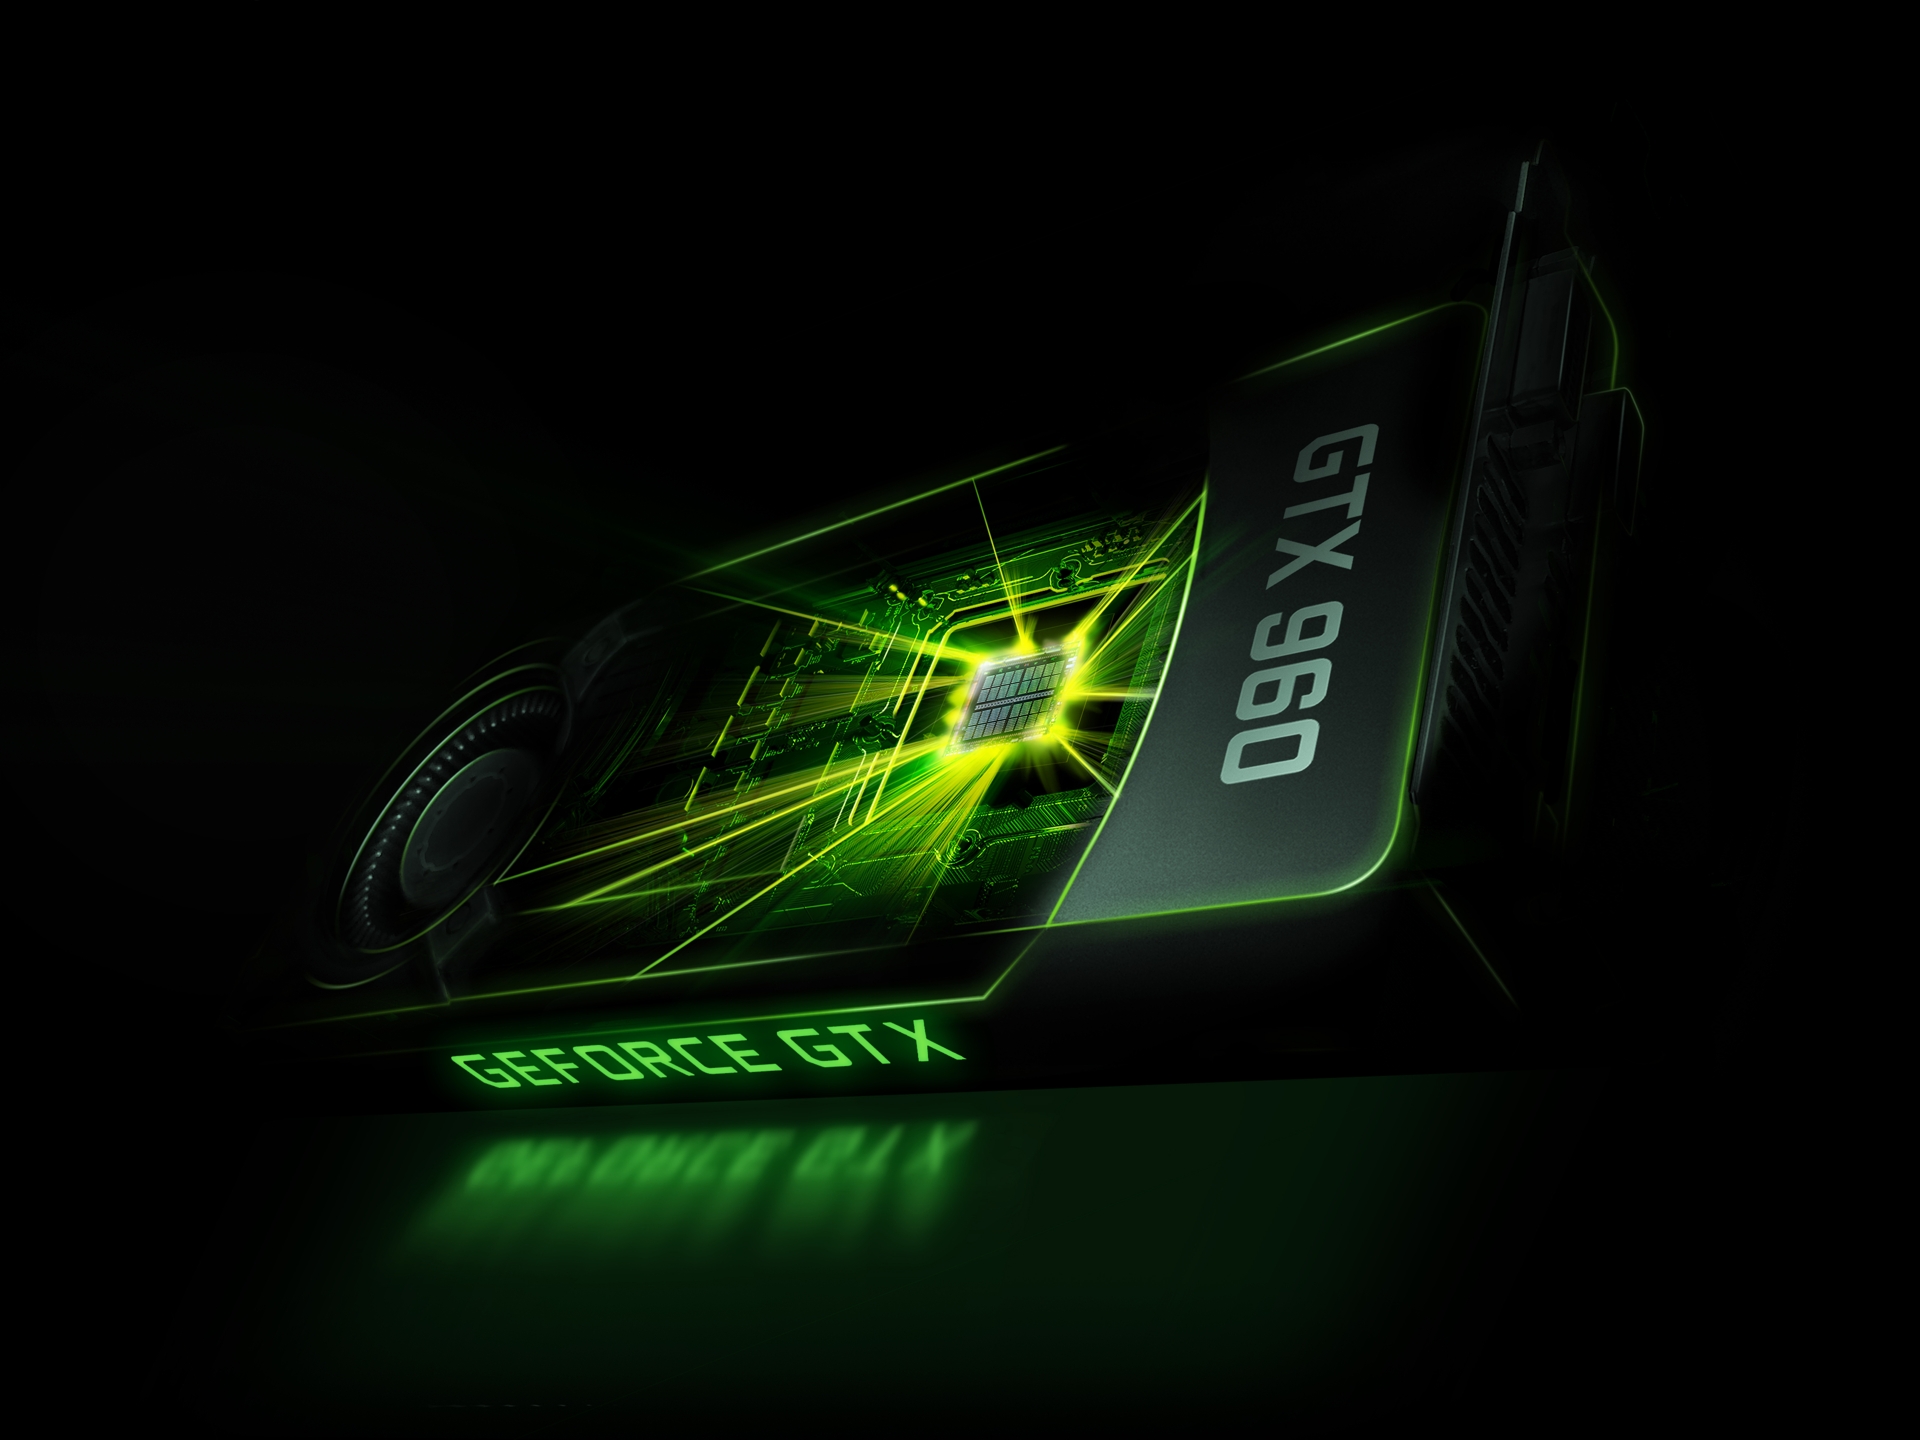 Immagine pubblicata in relazione al seguente contenuto: NVIDIA annuncia ufficialmente video card Maxwell GeForce GTX 960 | Nome immagine: news22134_nvidia-geforce-gtx-960-key-image_1.jpg